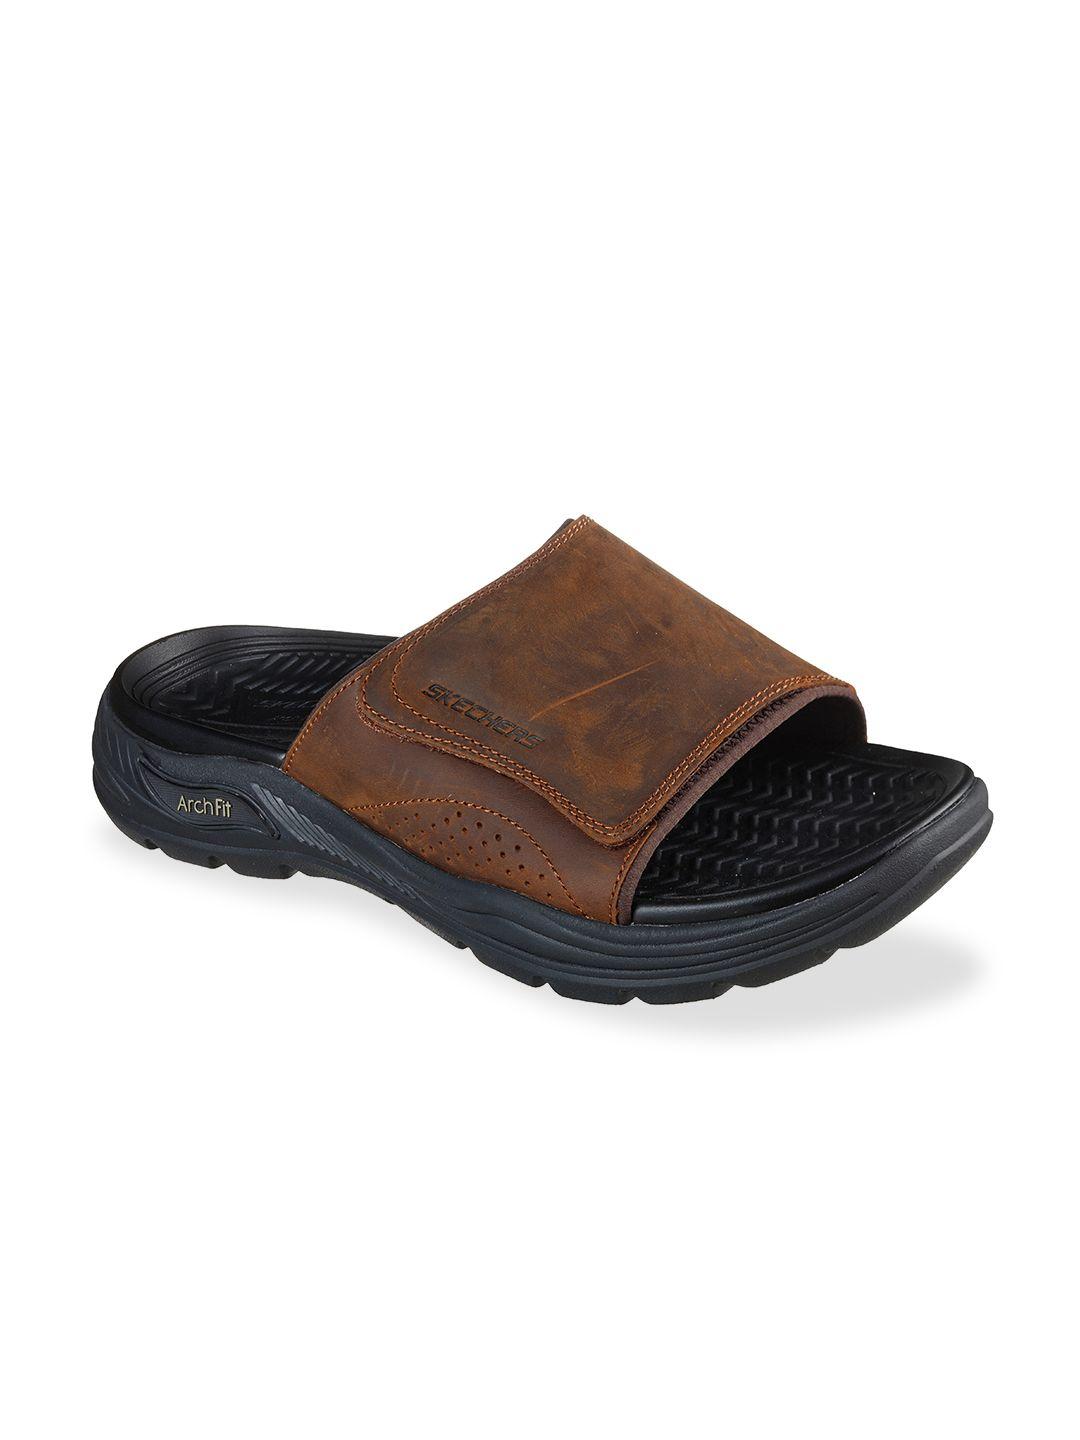 skechers men brown comfort sandals